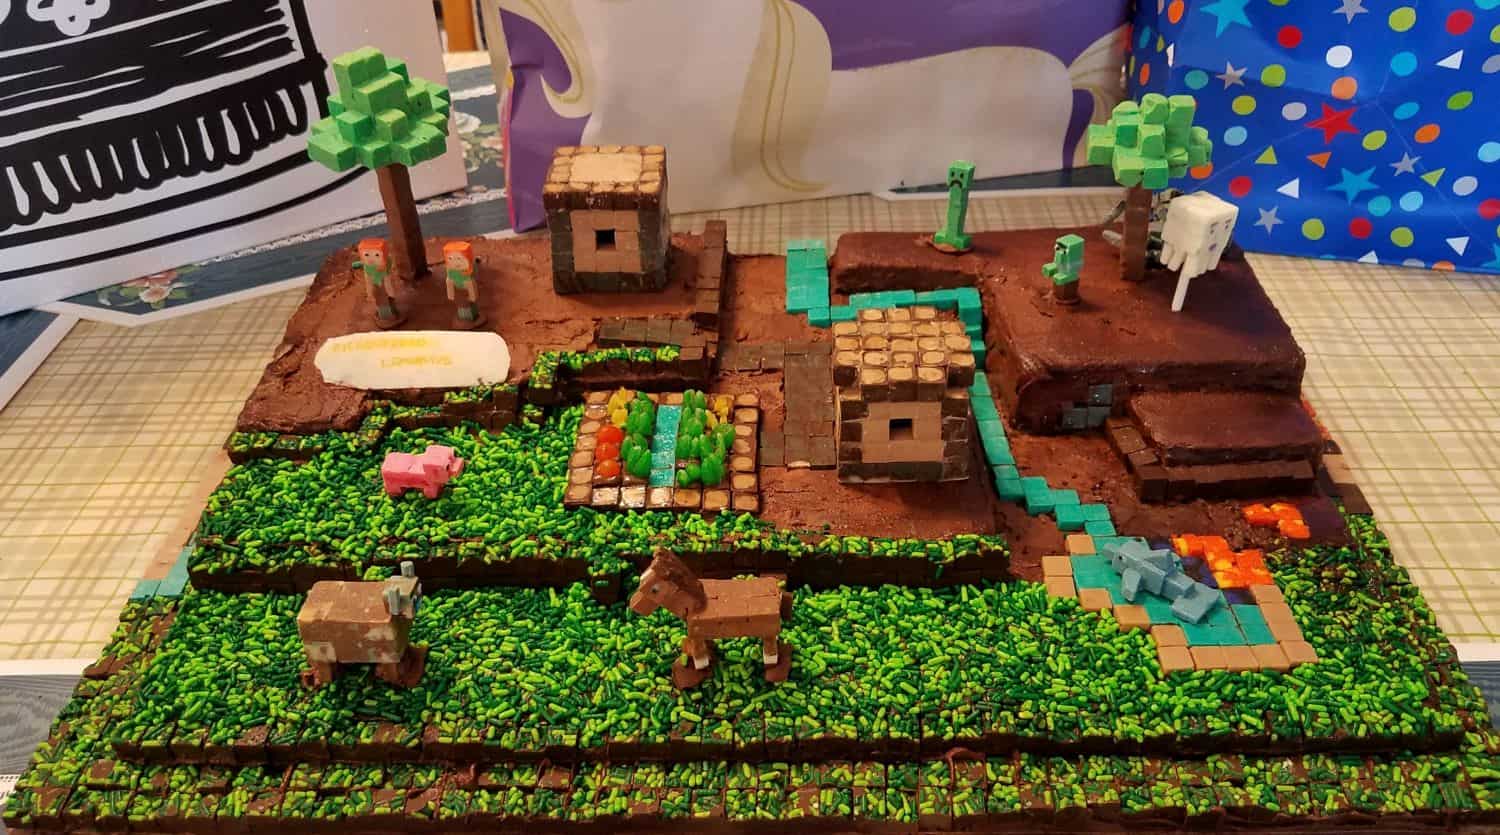 Minecraft Theme Cake | Minecraft birthday cake – Liliyum Patisserie & Cafe